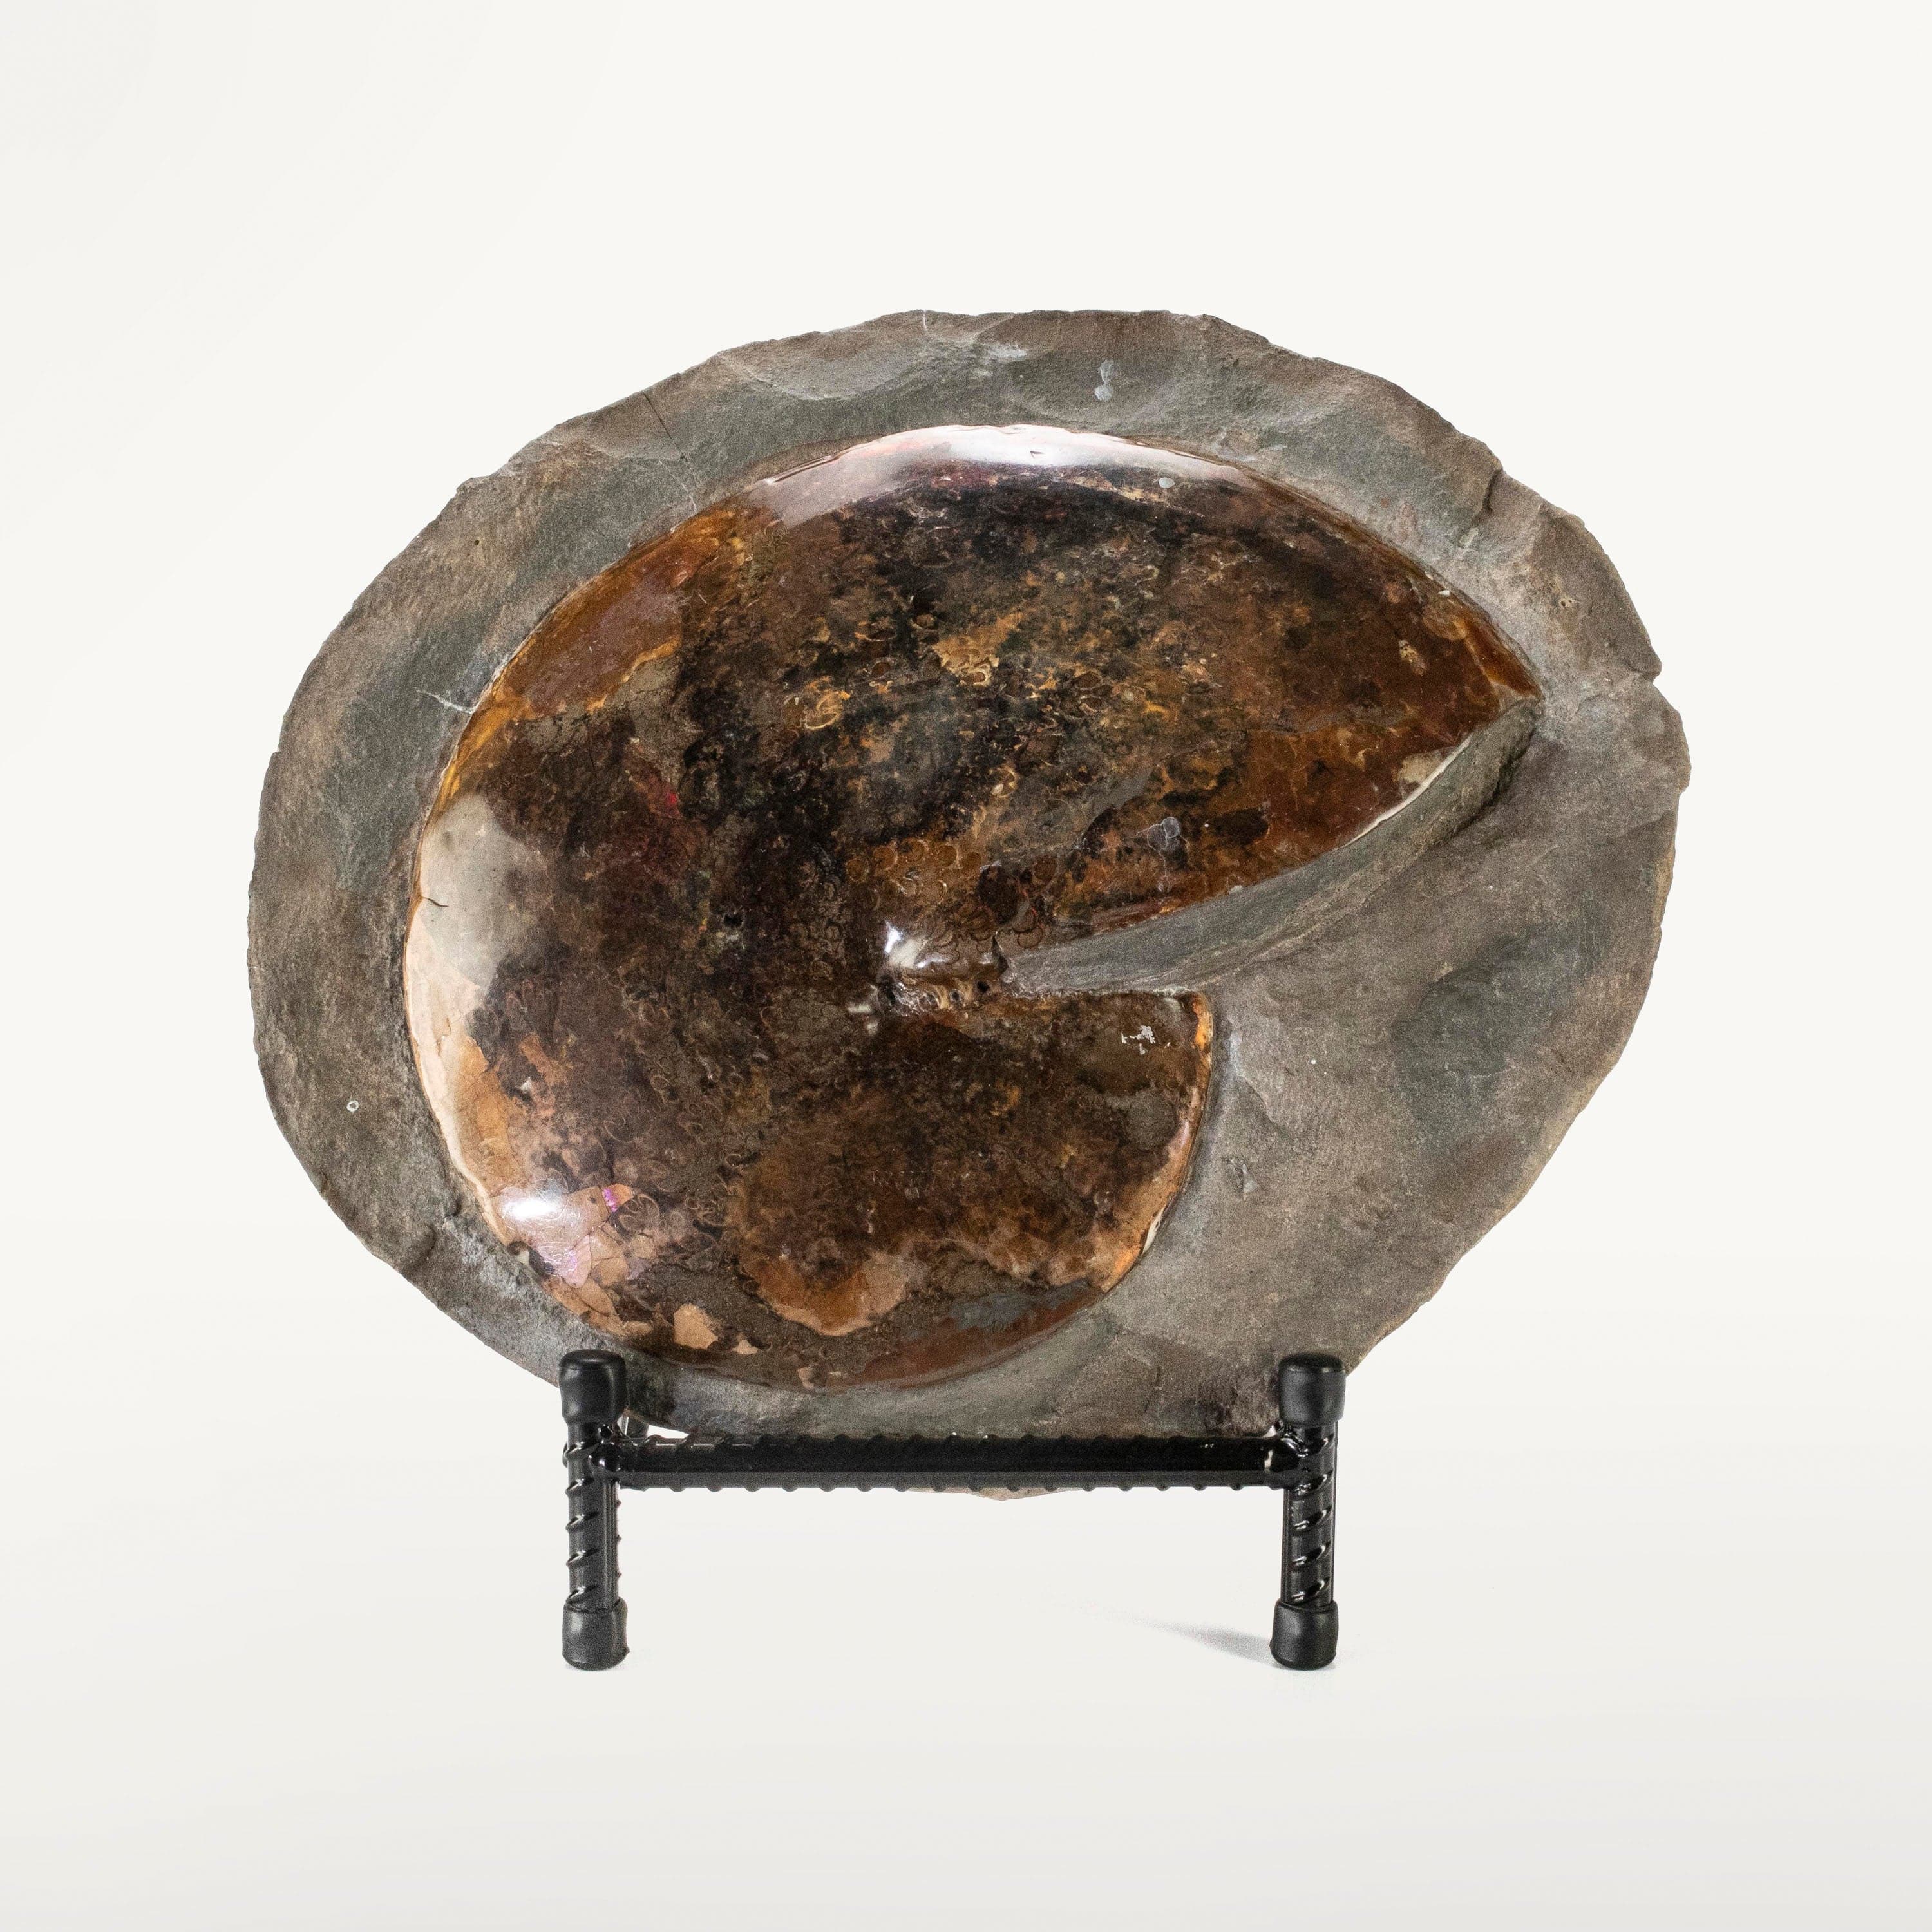 Kalifano Ammonites & Orthoceras Madagascar Ammonite in False Matrix - 12" AMG6900.001